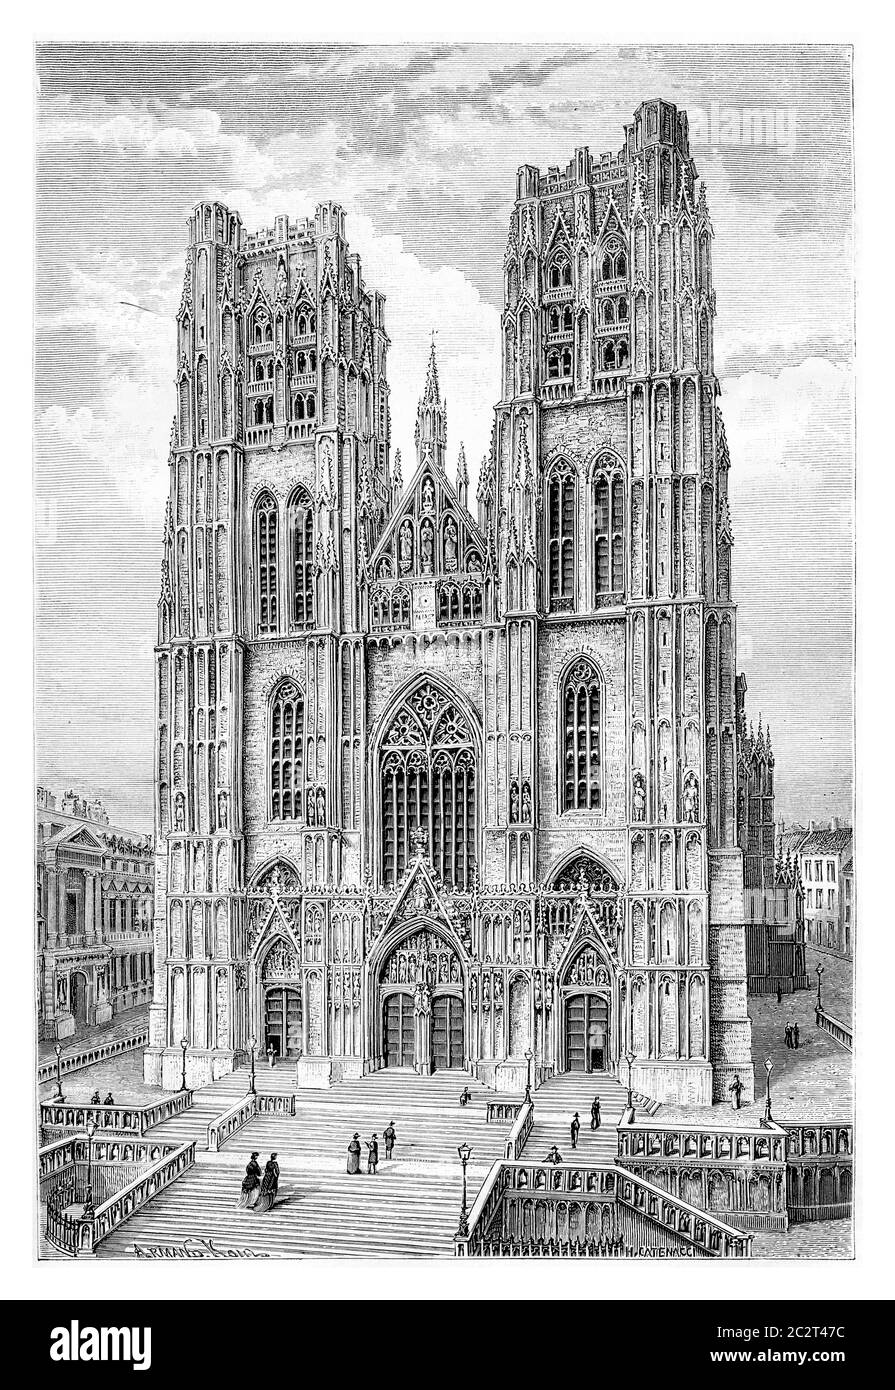 Cattedrale di San Michele e San Gudula a Bruxelles, Belgio, disegno di Catenacci basato su una fotografia, illustrazione d'epoca. Le Tour du Monde, Viaggi Foto Stock